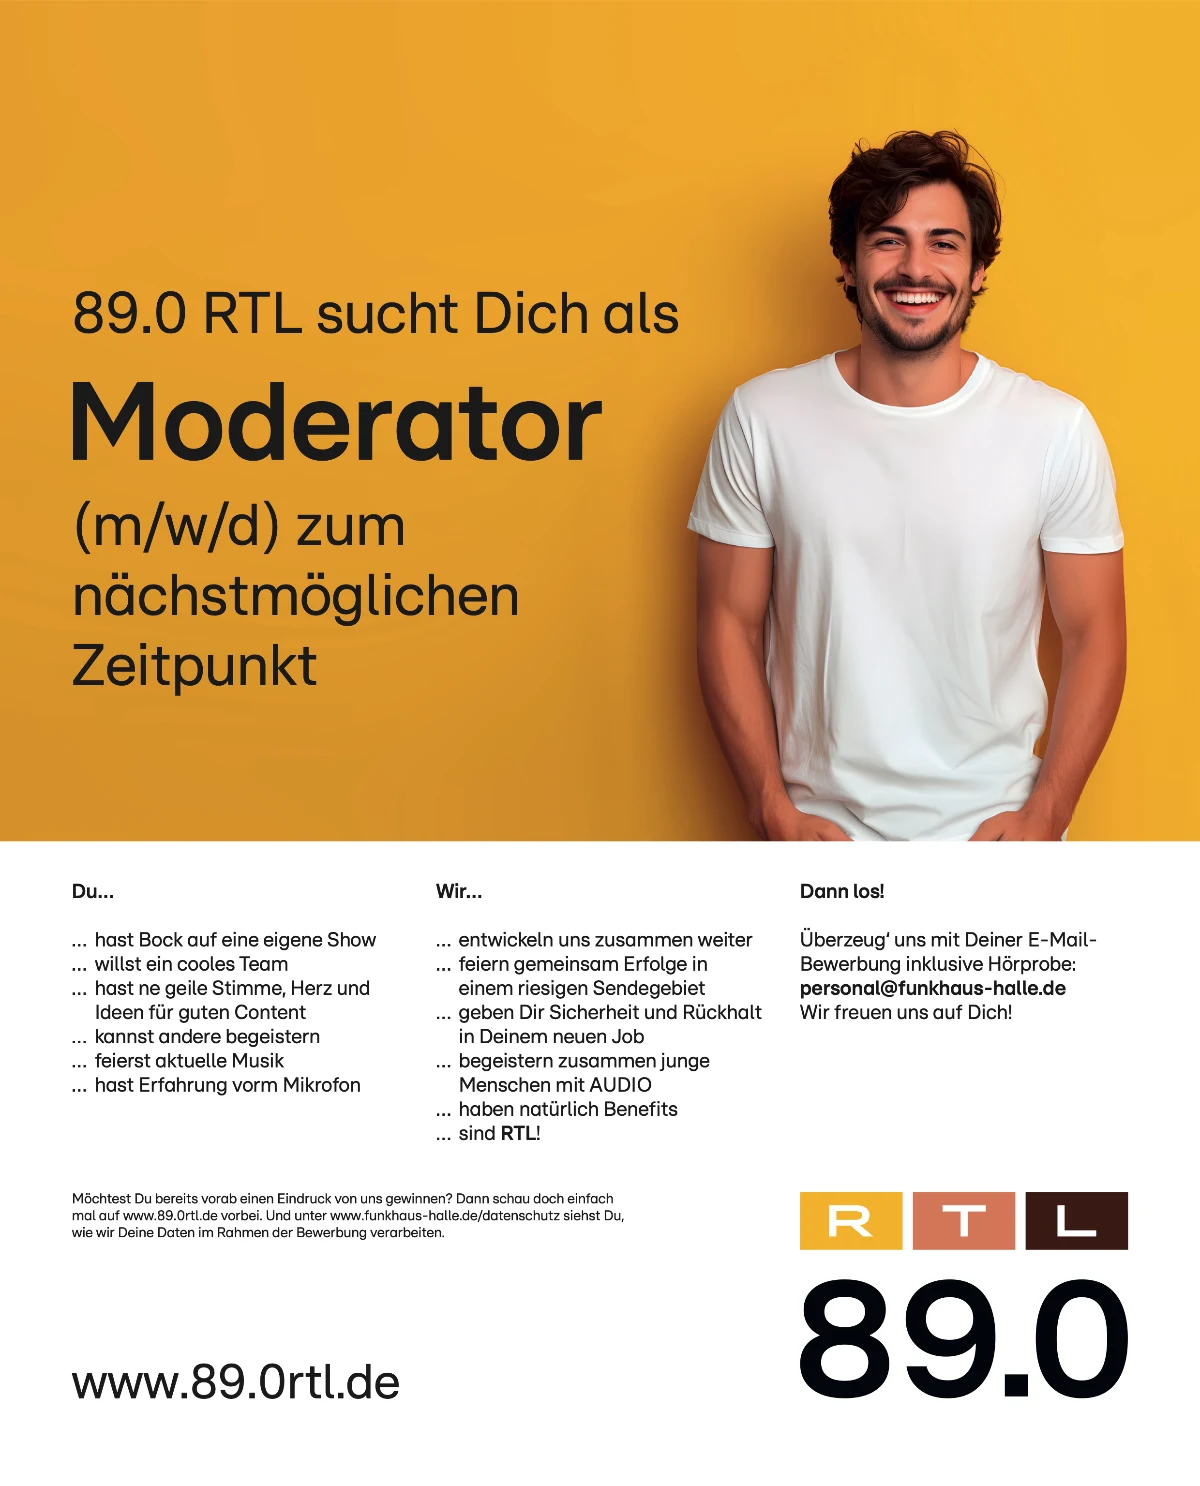 89.0 RTL sucht Moderator (m/w/d)